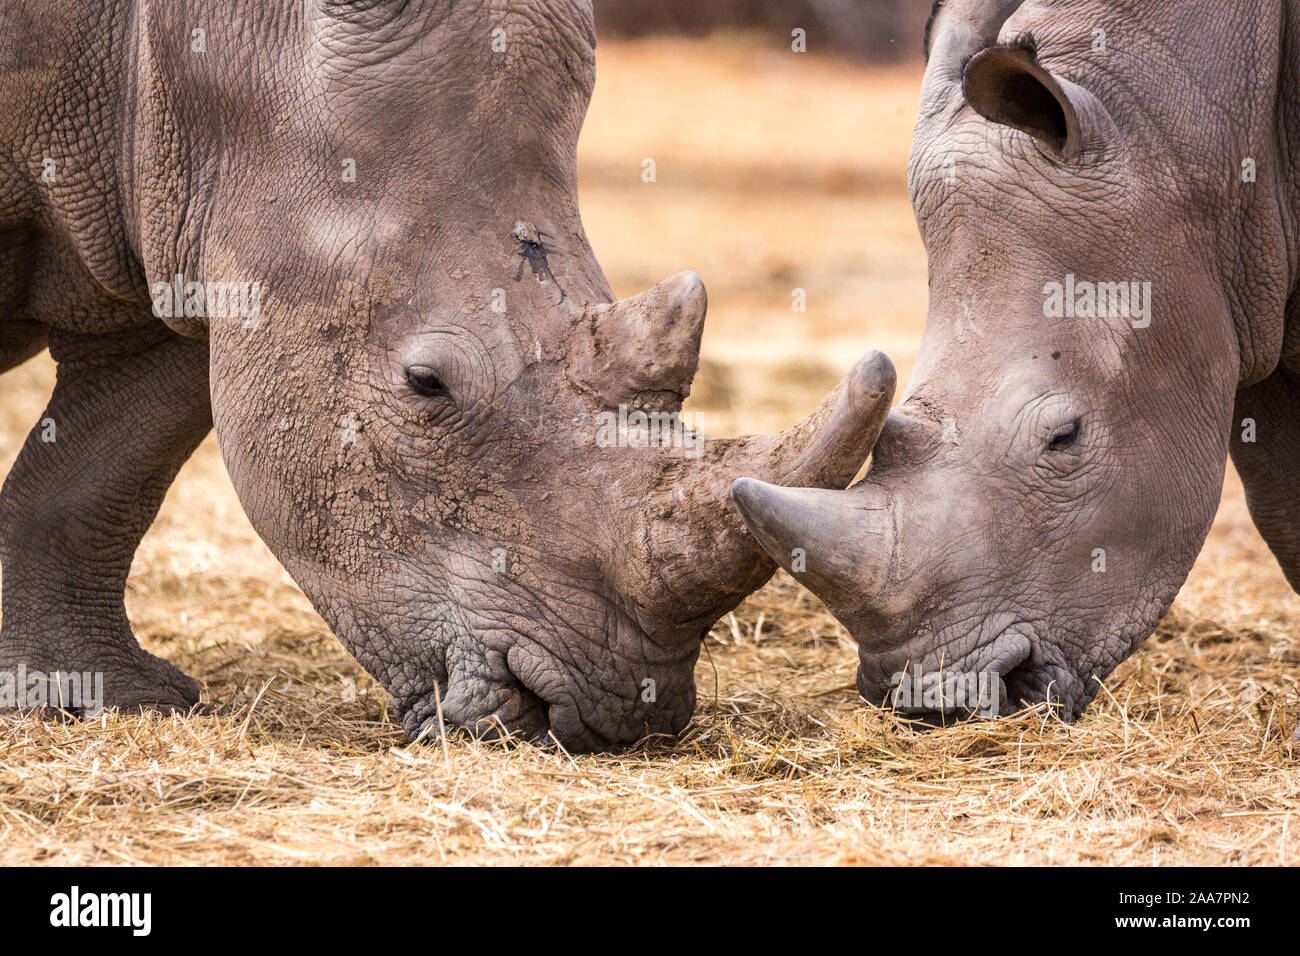 Close up de deux rhinocéros blanc mange de l'herbe, la Namibie, l'Afrique Banque D'Images